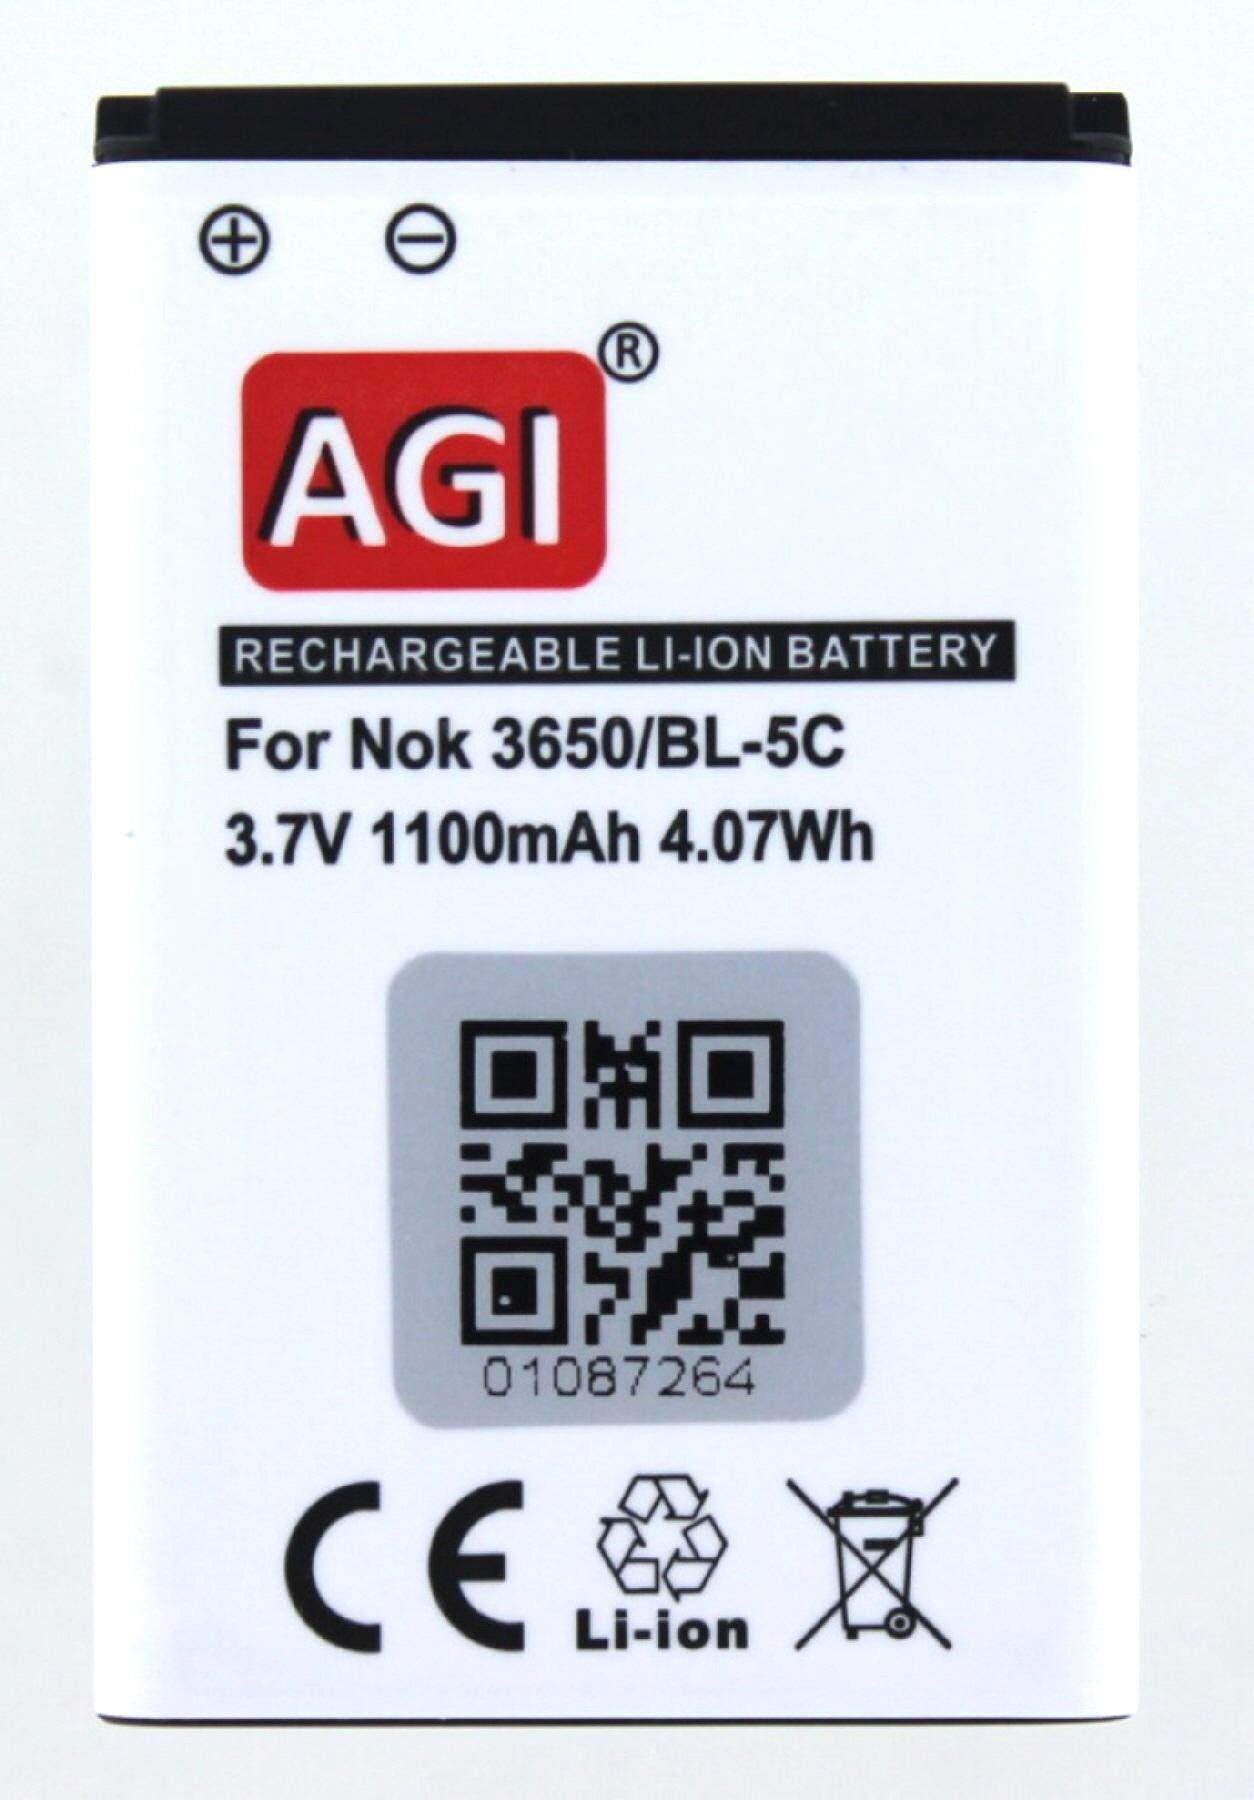 Comfort 1020 mit AGI Auro Akku Akku Akku kompatibel